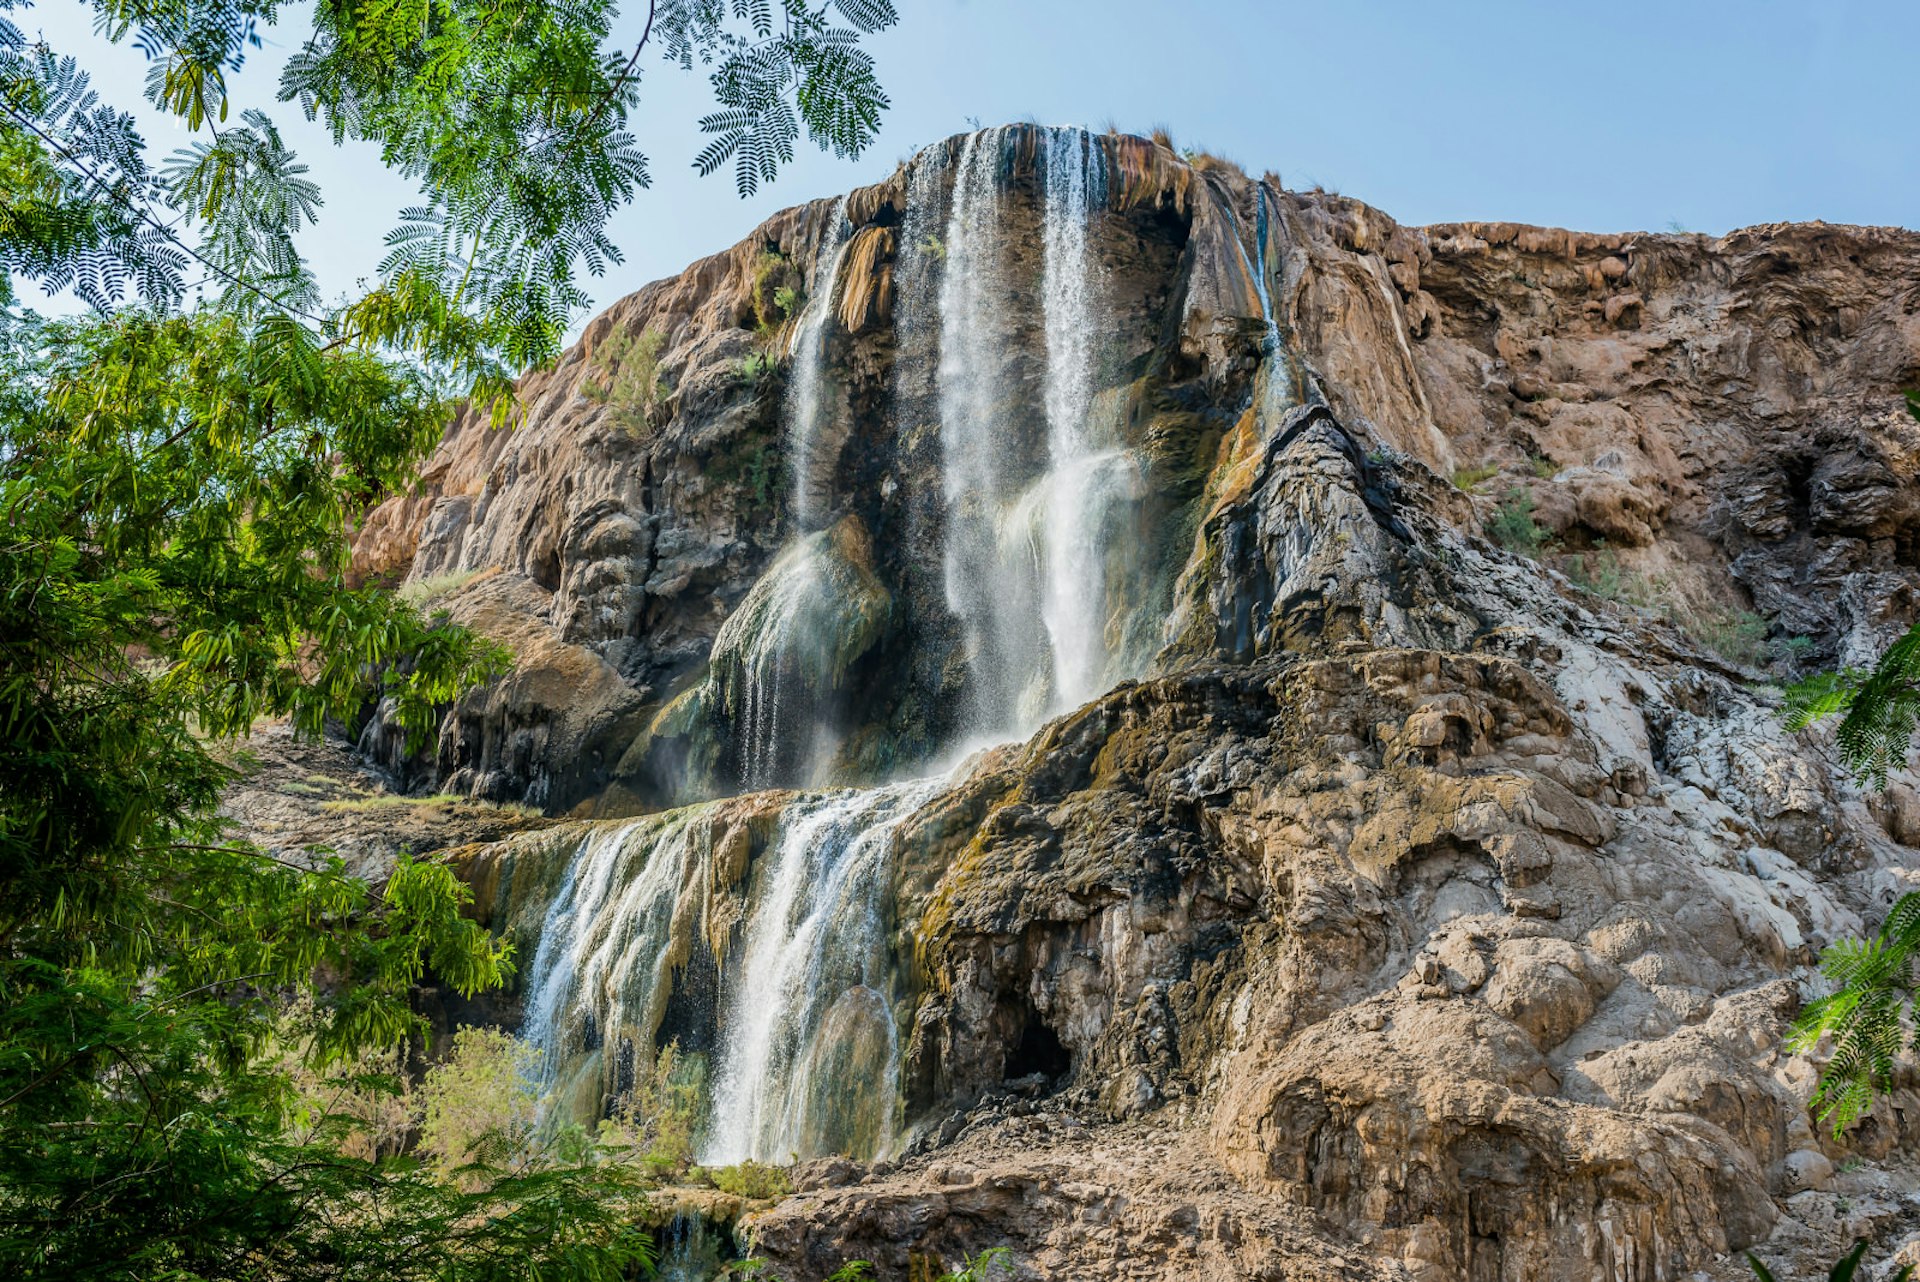 Ma'in Hot Springs waterfall in Jordan. Image by ostill / Shutterstock